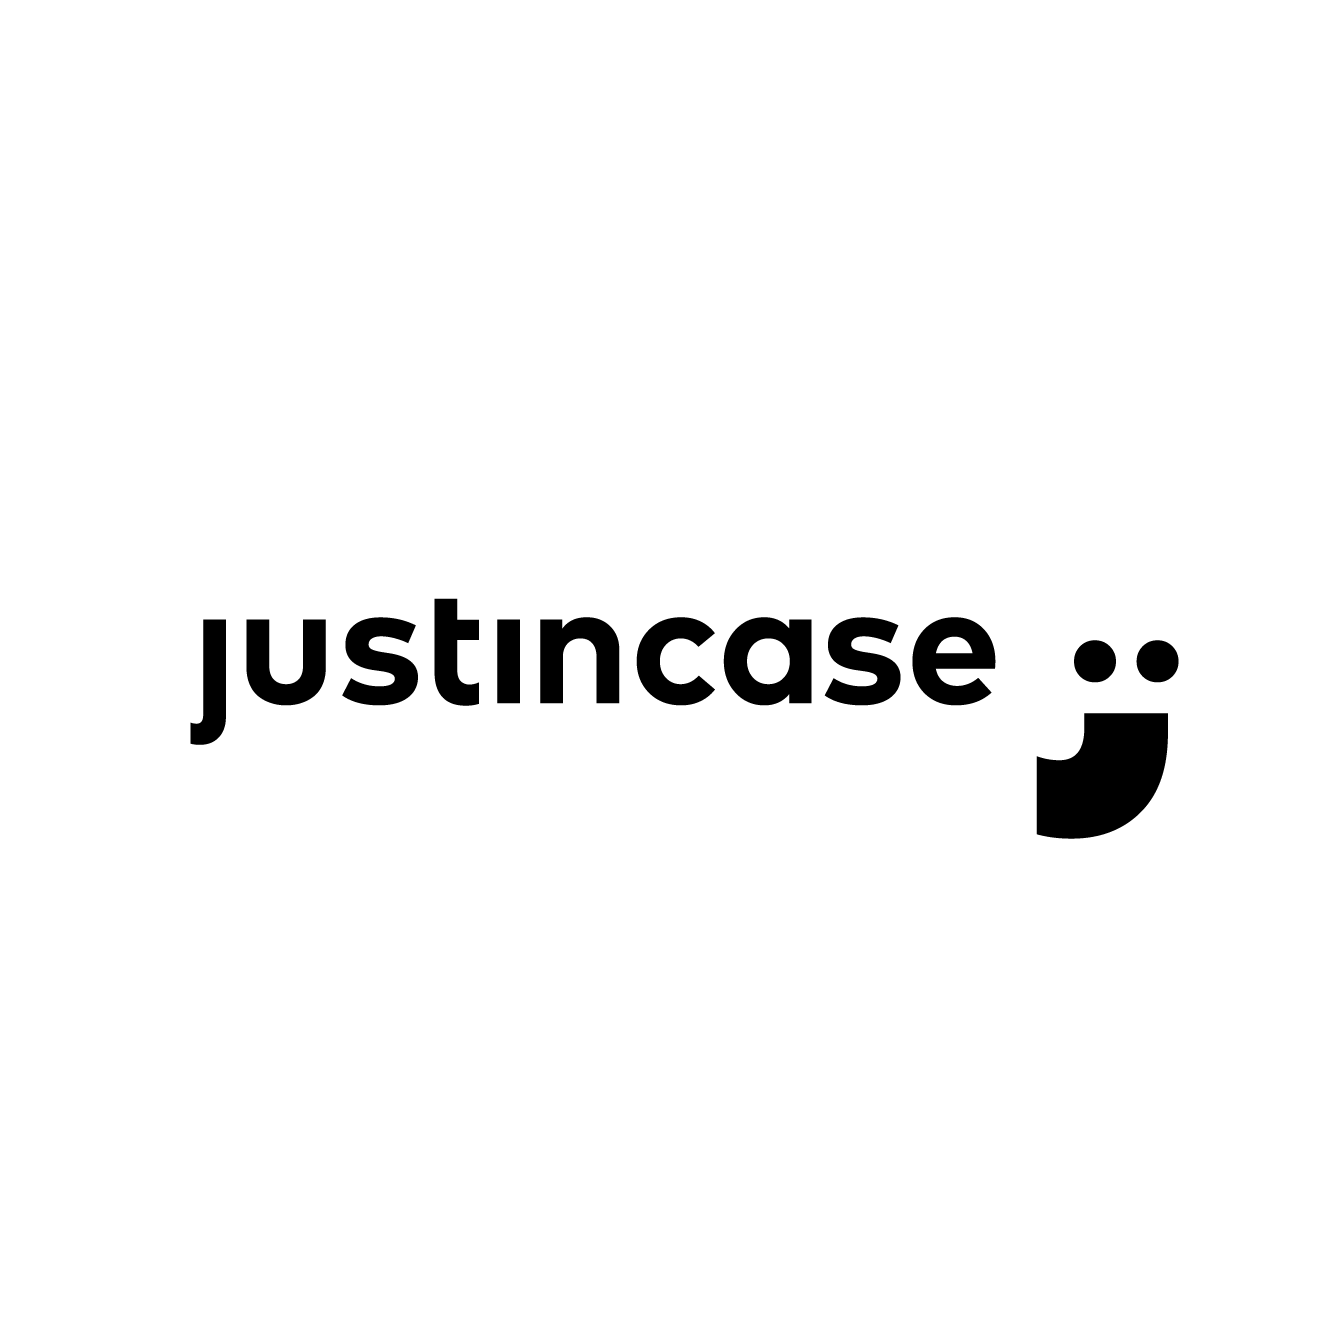 justincase logo-01.png